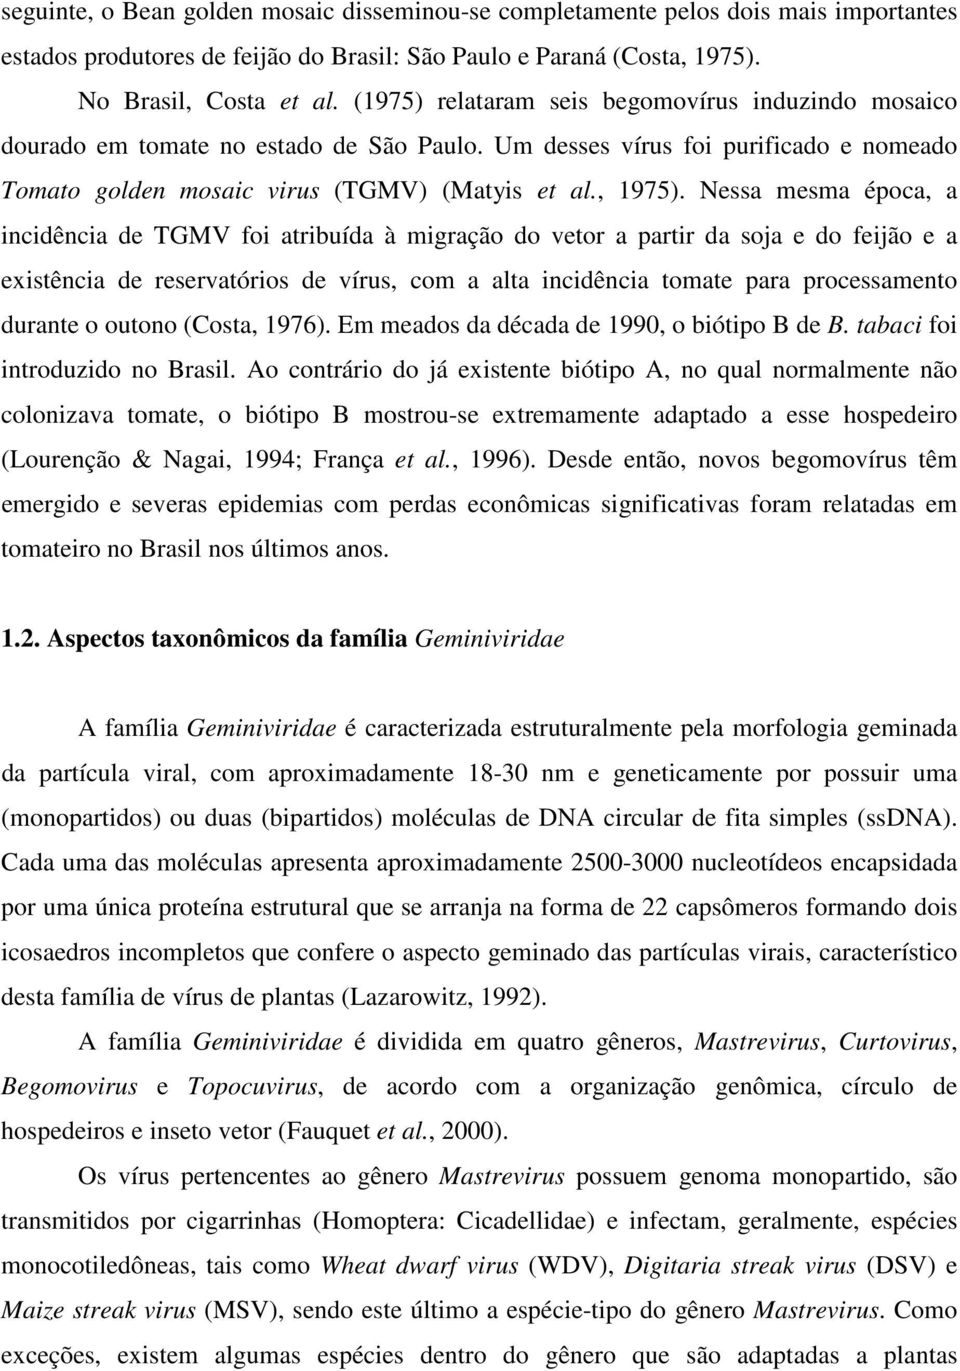 Nessa mesma época, a incidência de TGMV foi atribuída à migração do vetor a partir da soja e do feijão e a existência de reservatórios de vírus, com a alta incidência tomate para processamento